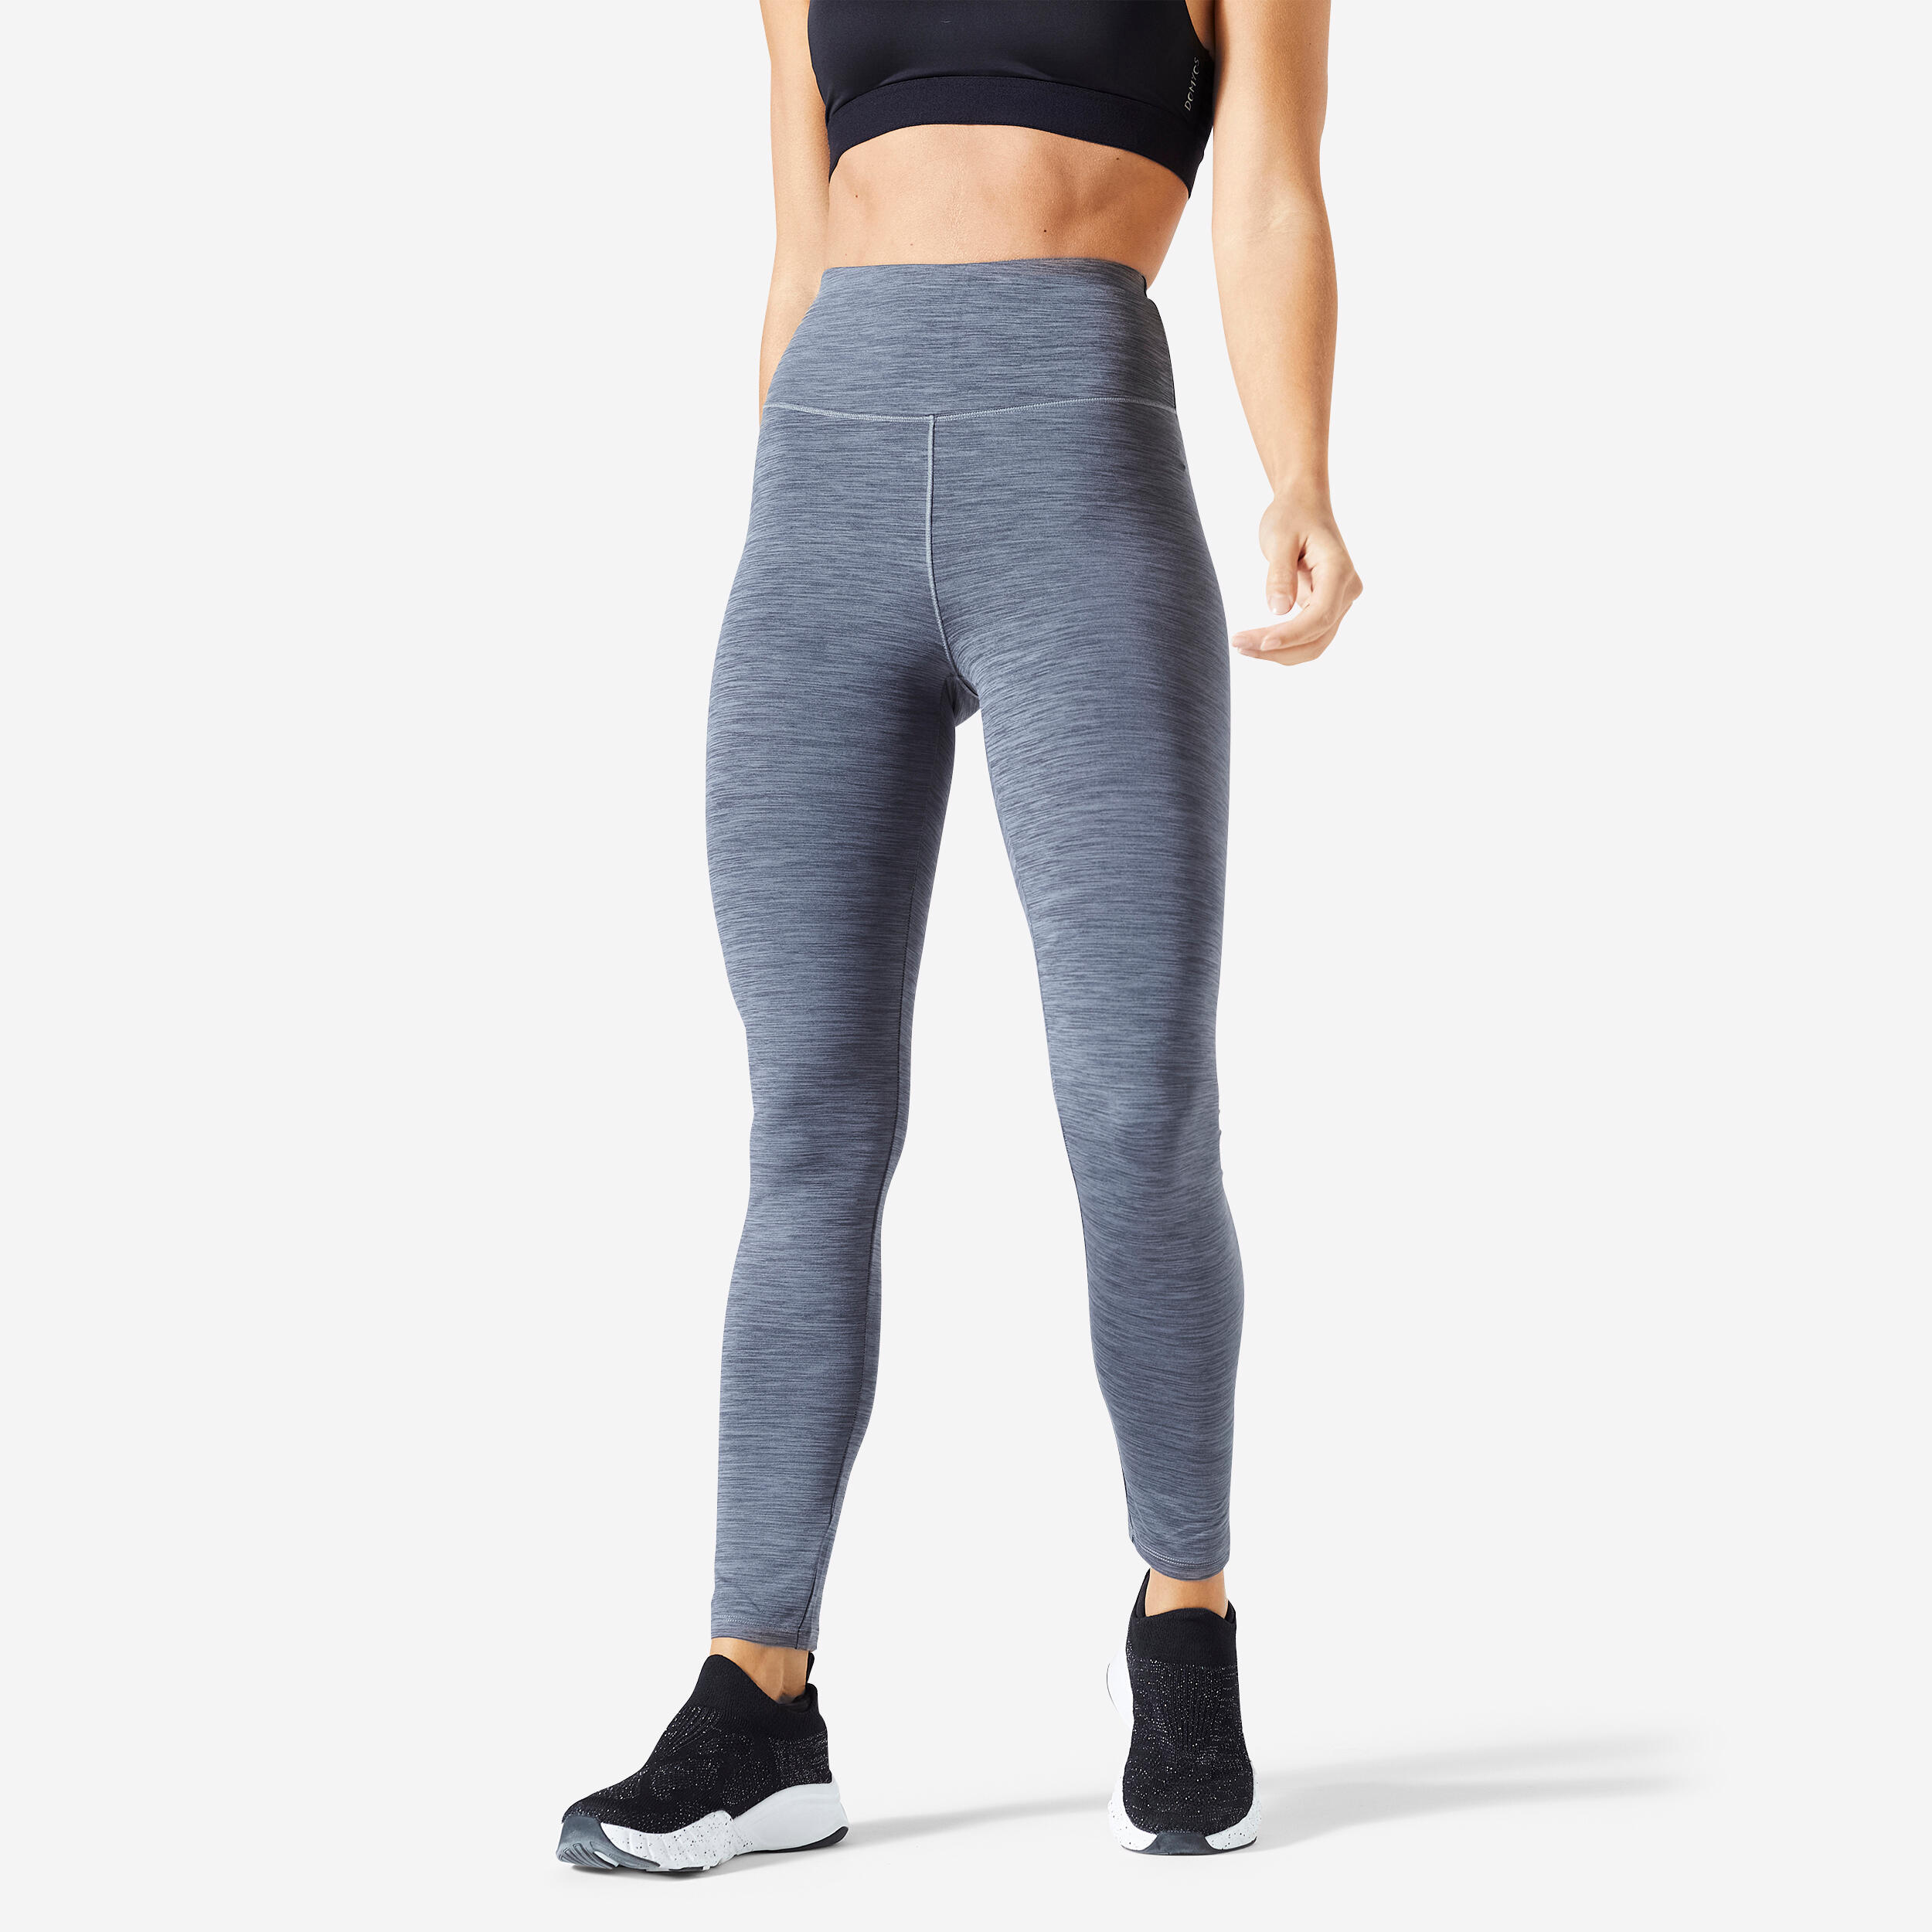 Women’s High-Waisted Fitness Leggings - FTI 100 Grey